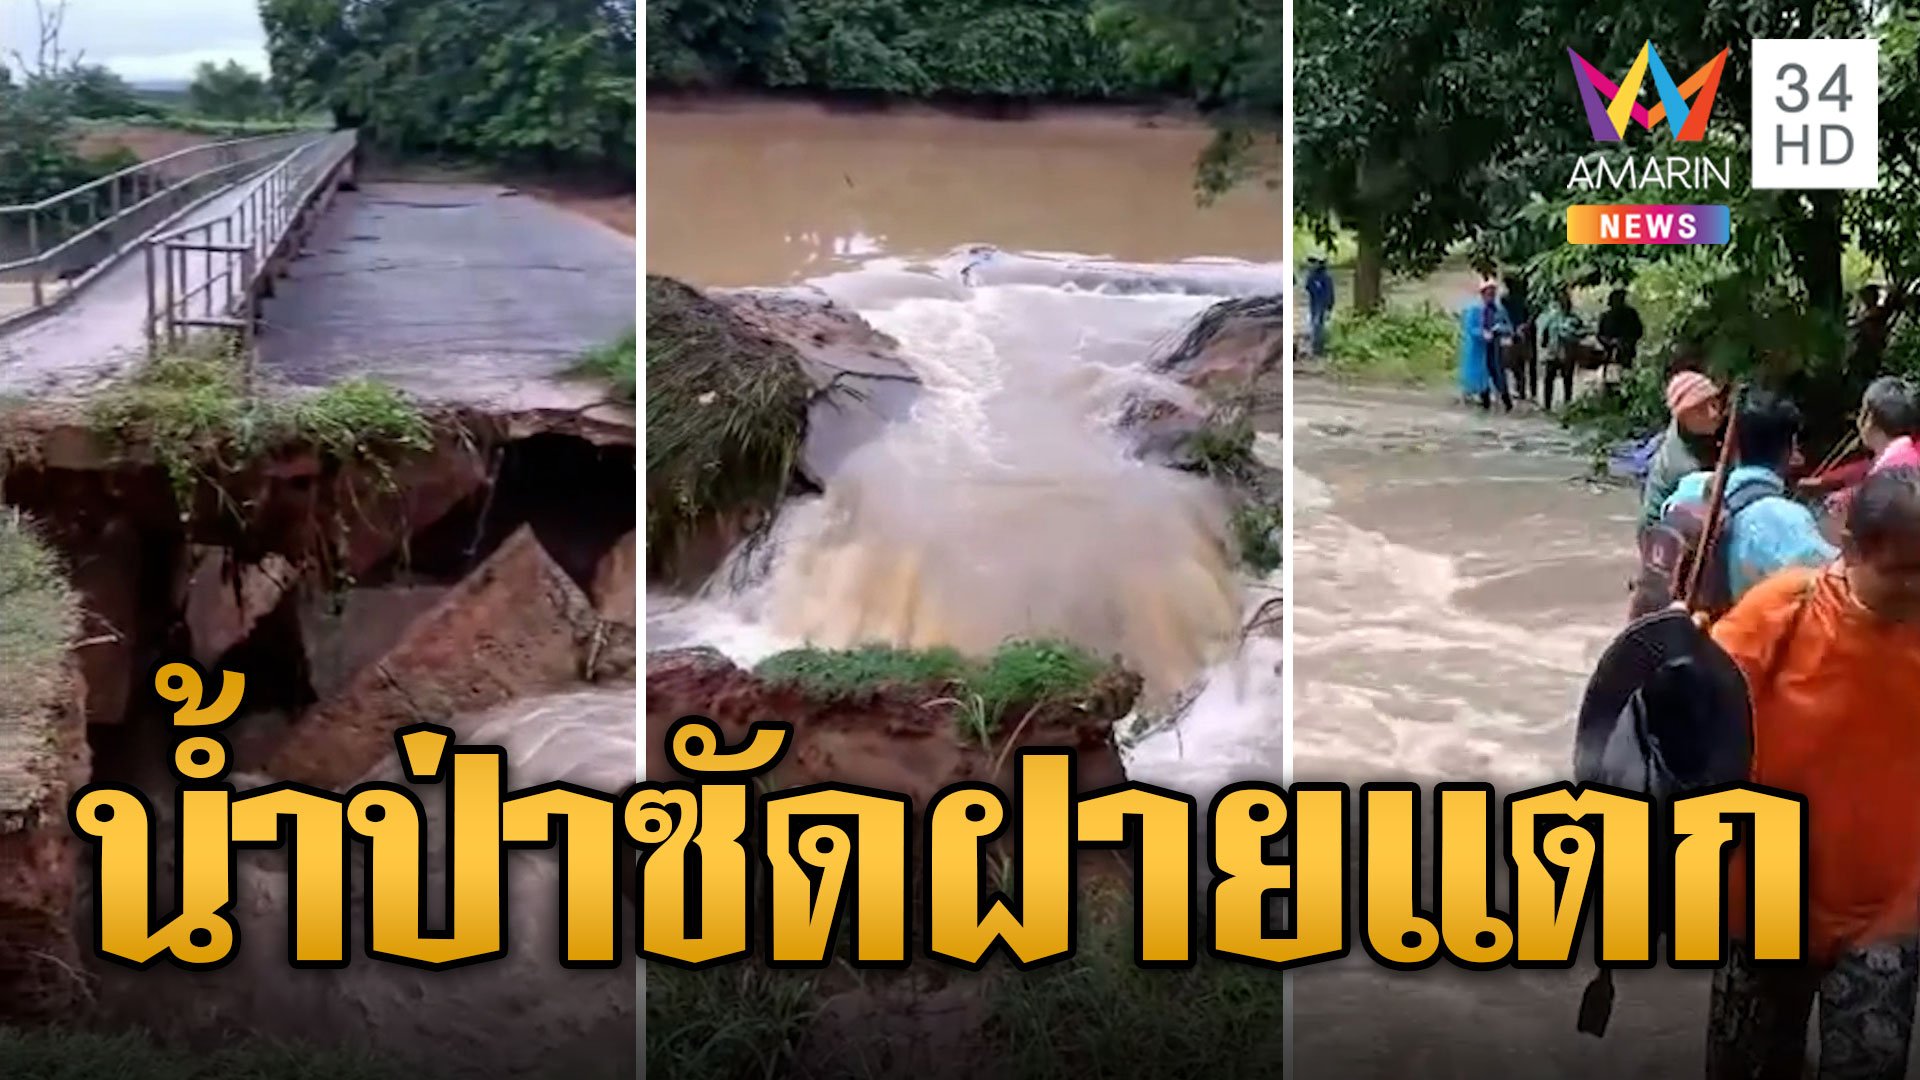 ระทึก! น้ำป่าทะลัก ซัดฝายน้ำล้นแตกท่วมชุมชน | ข่าวเที่ยงอมรินทร์ | 27 ก.ย. 66 | AMARIN TVHD34